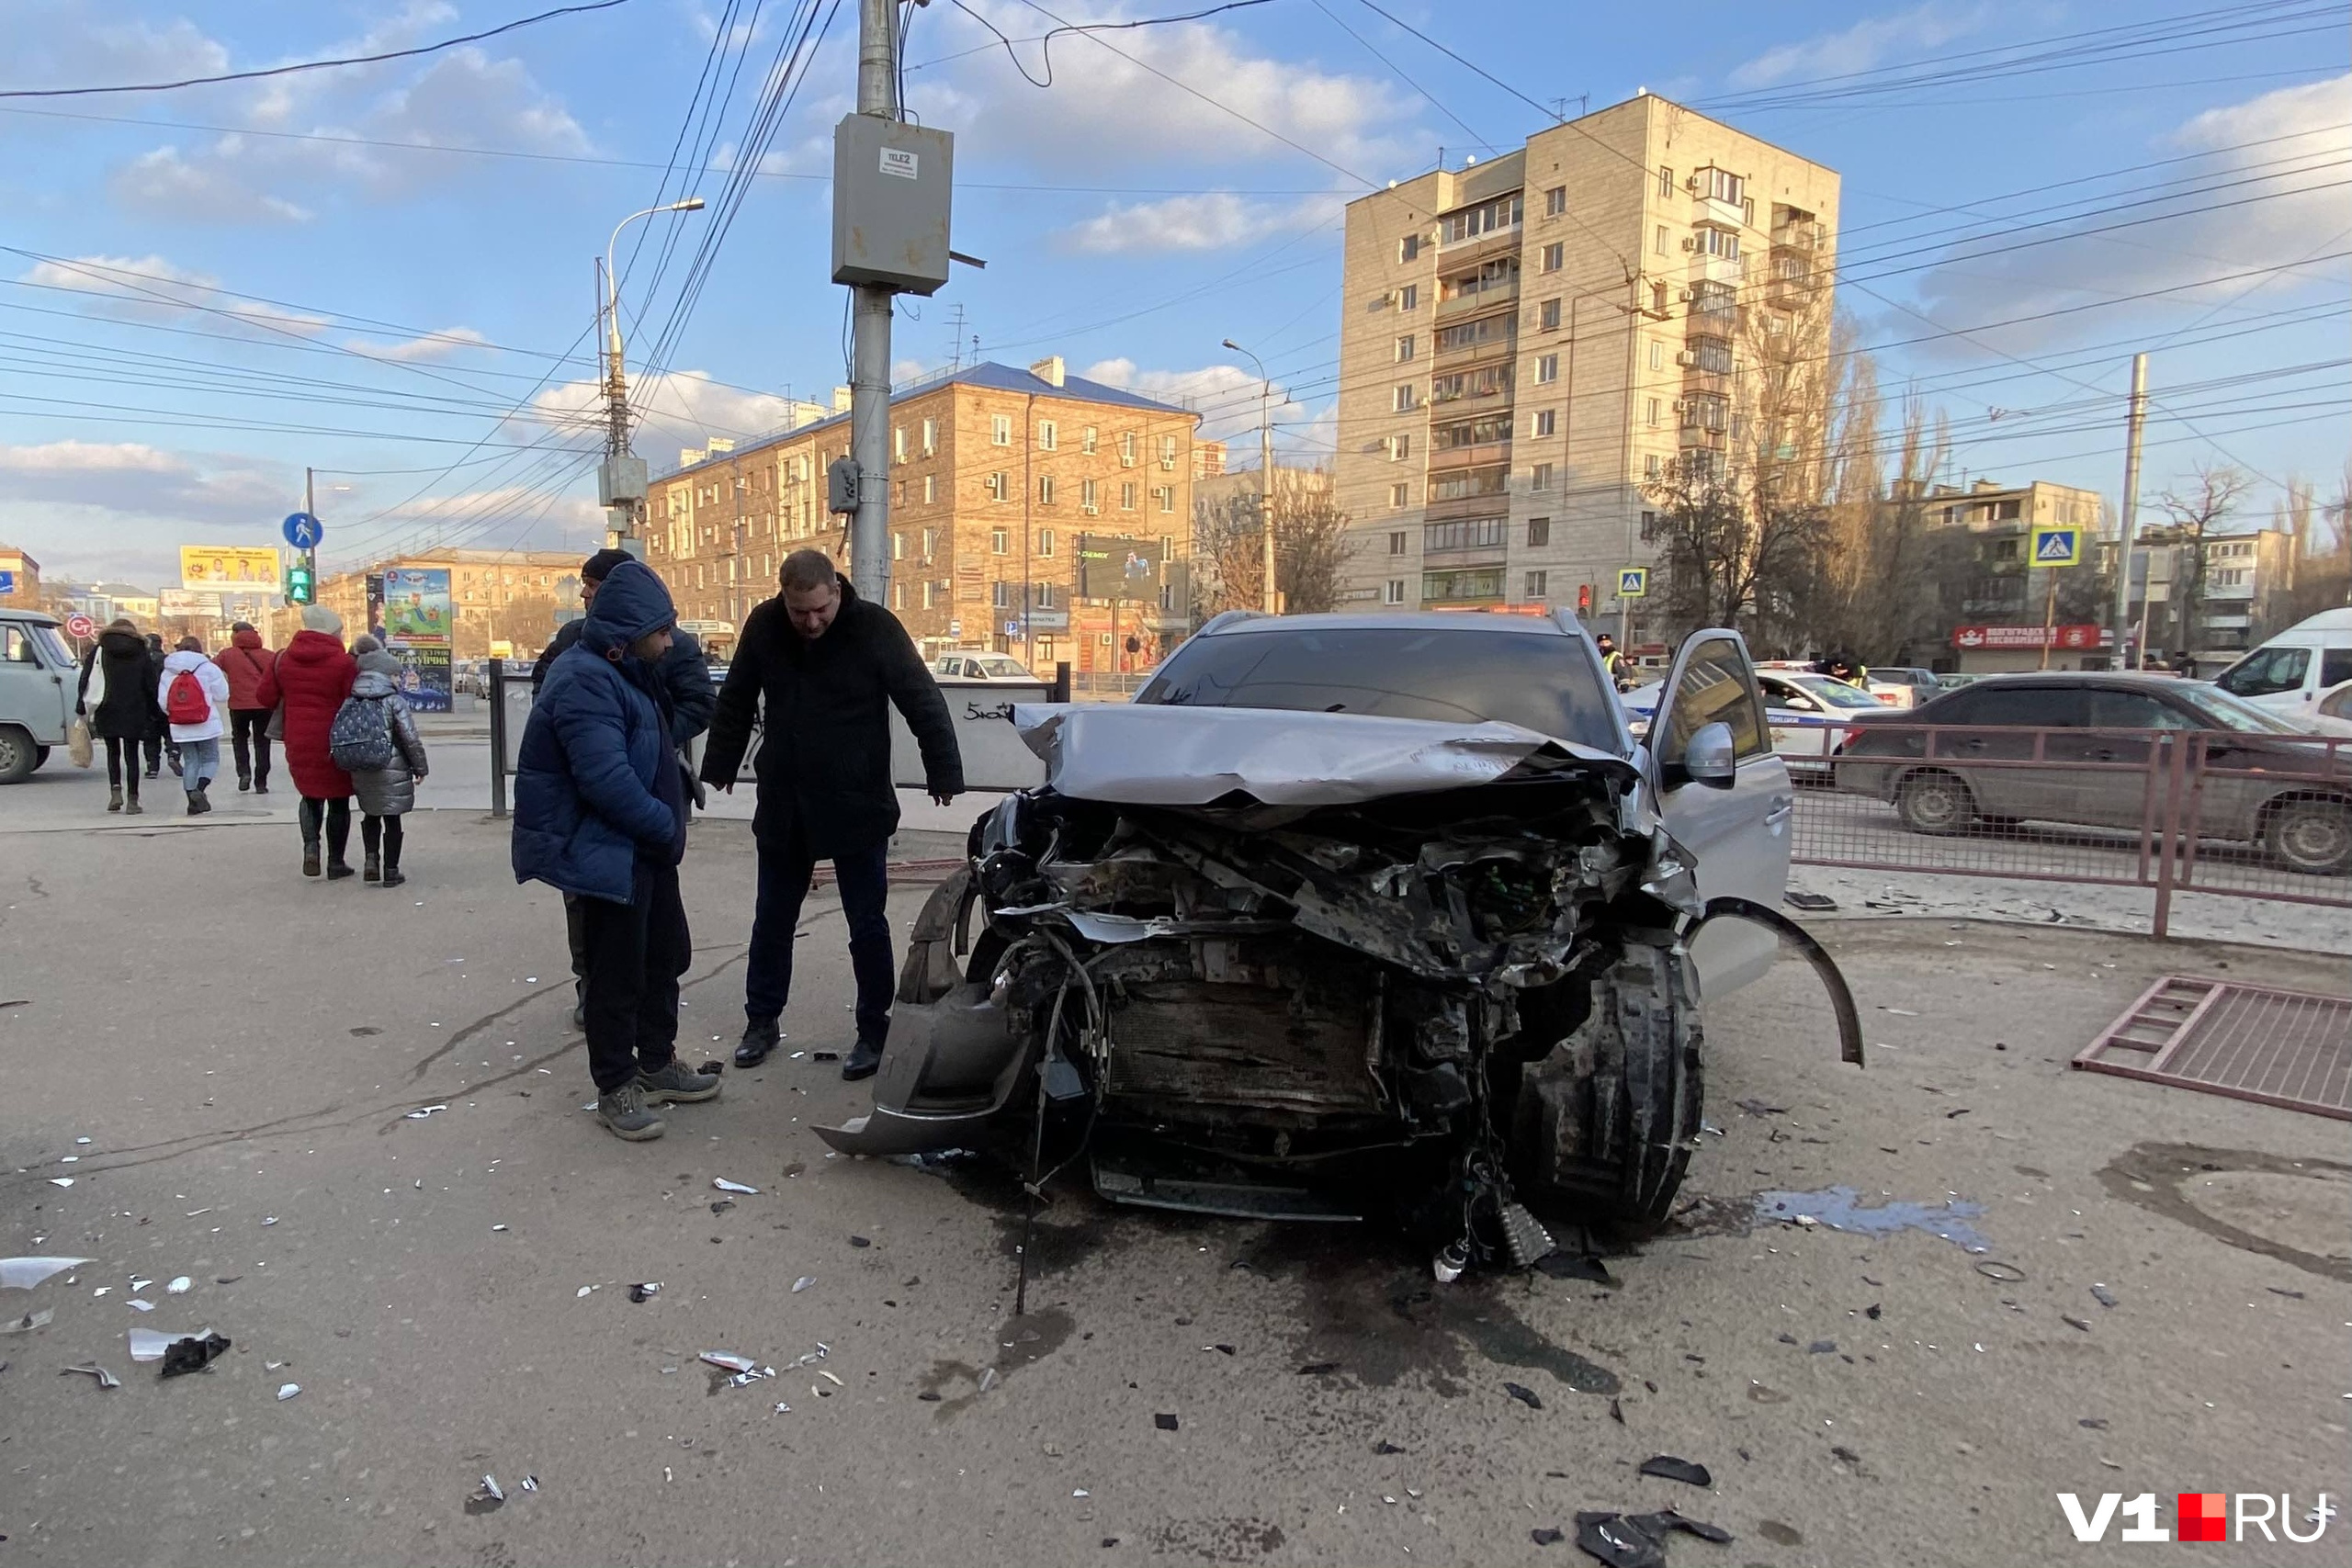 Серьёзная авария в Дагестане. Срочные новости происшествия